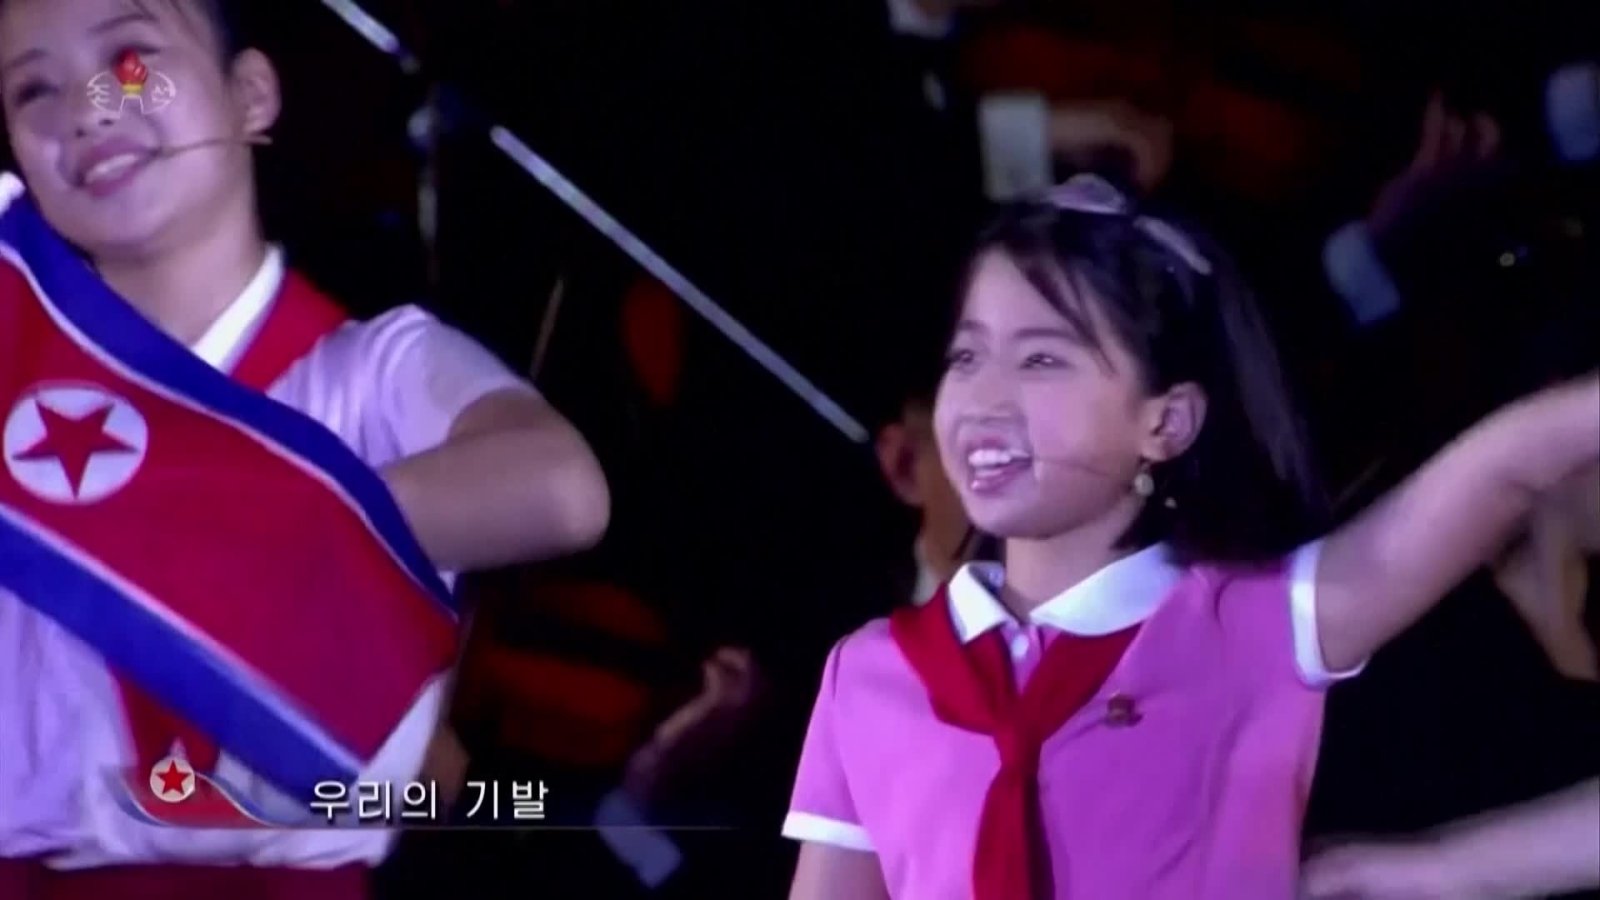 Skelbiama, kad Šiaurės Korėja pirmą kartą viešai parodė Kim Jong Uno dukterį